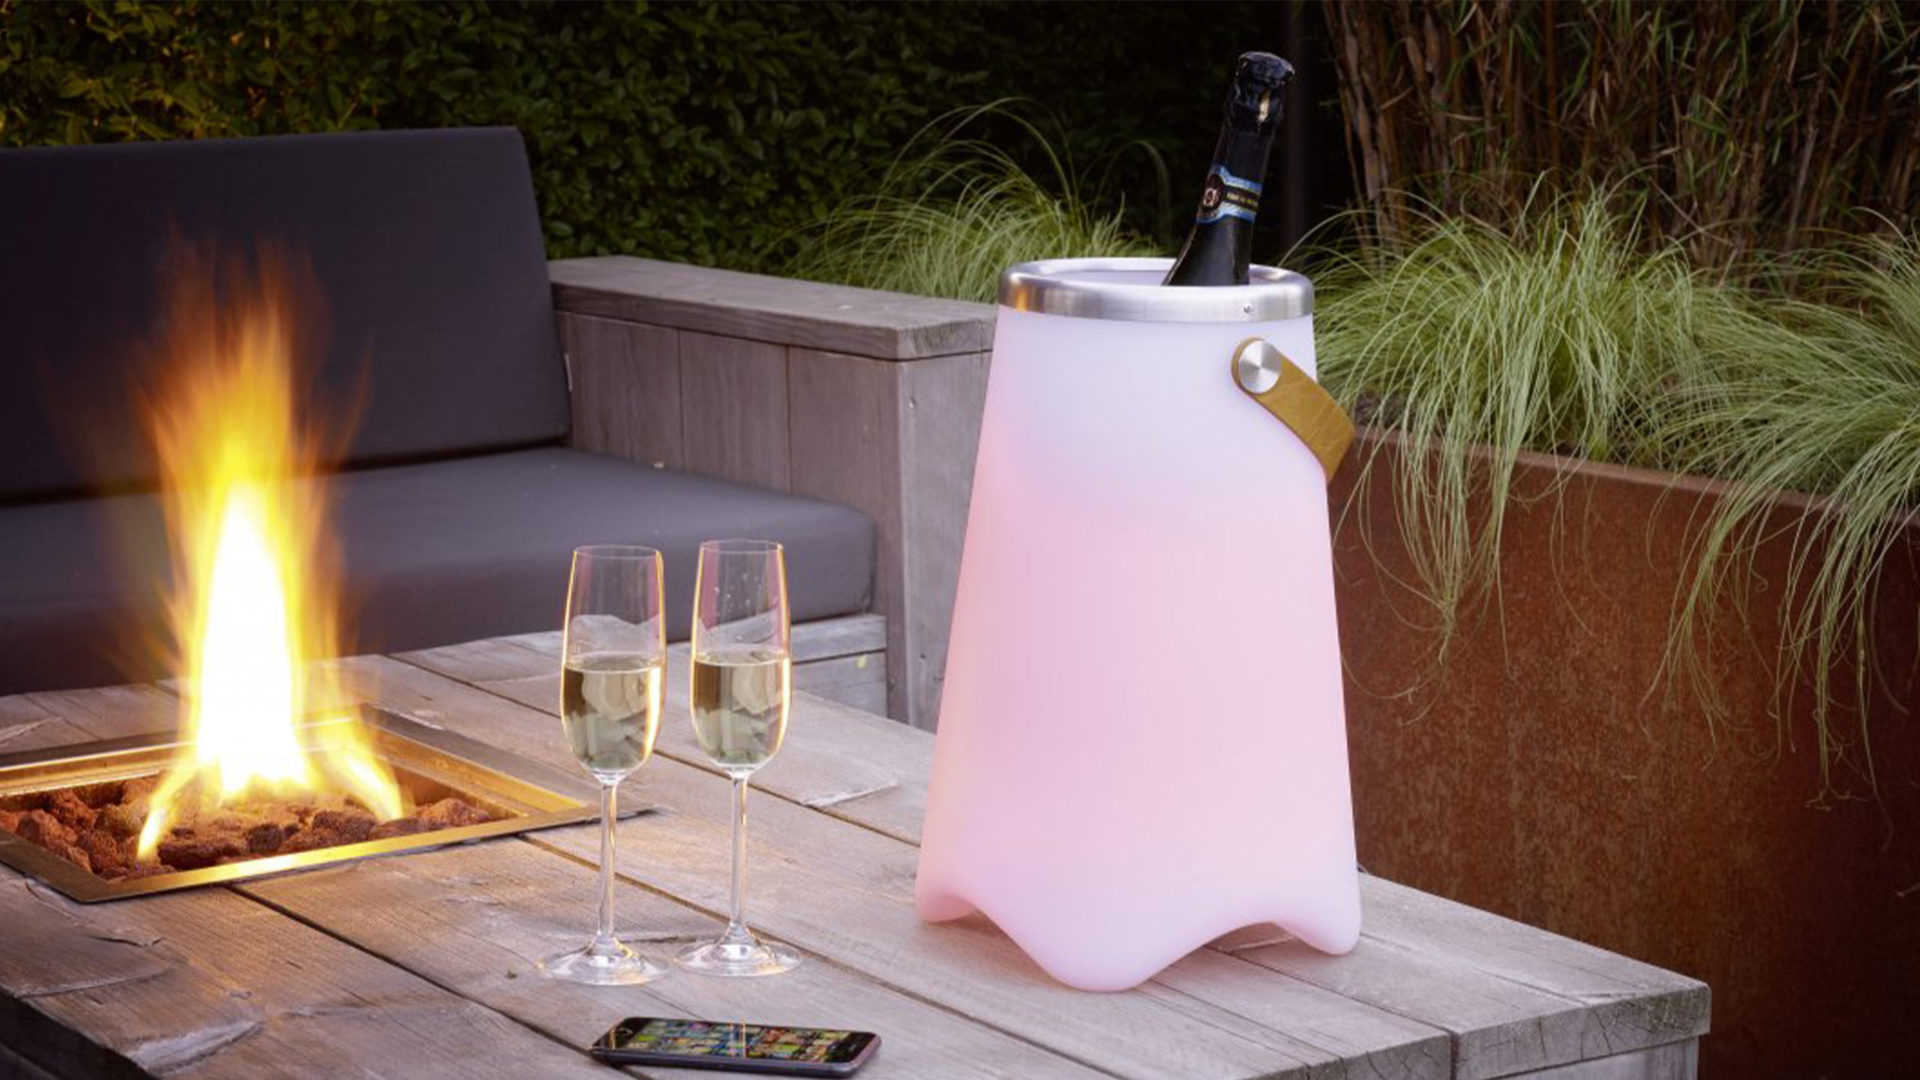 trio leuchten jamaica getränkekühler mit sektflasche und led licht in pink neben einem feuer auf der terrasse am tisch